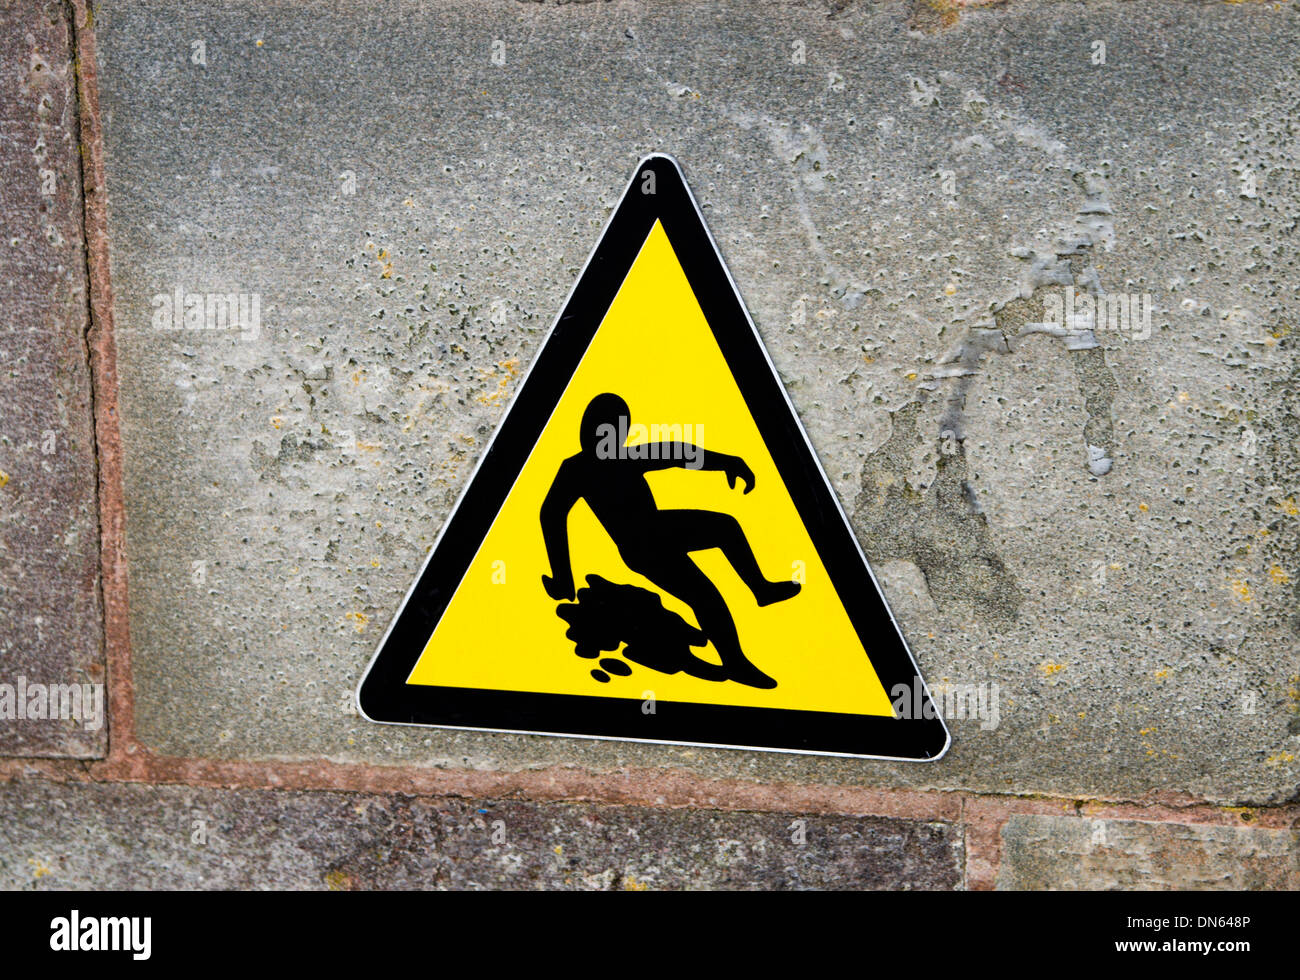 Señal de advertencia de superficie resbaladiza, la Bahía de Cardiff, Gales. Foto de stock